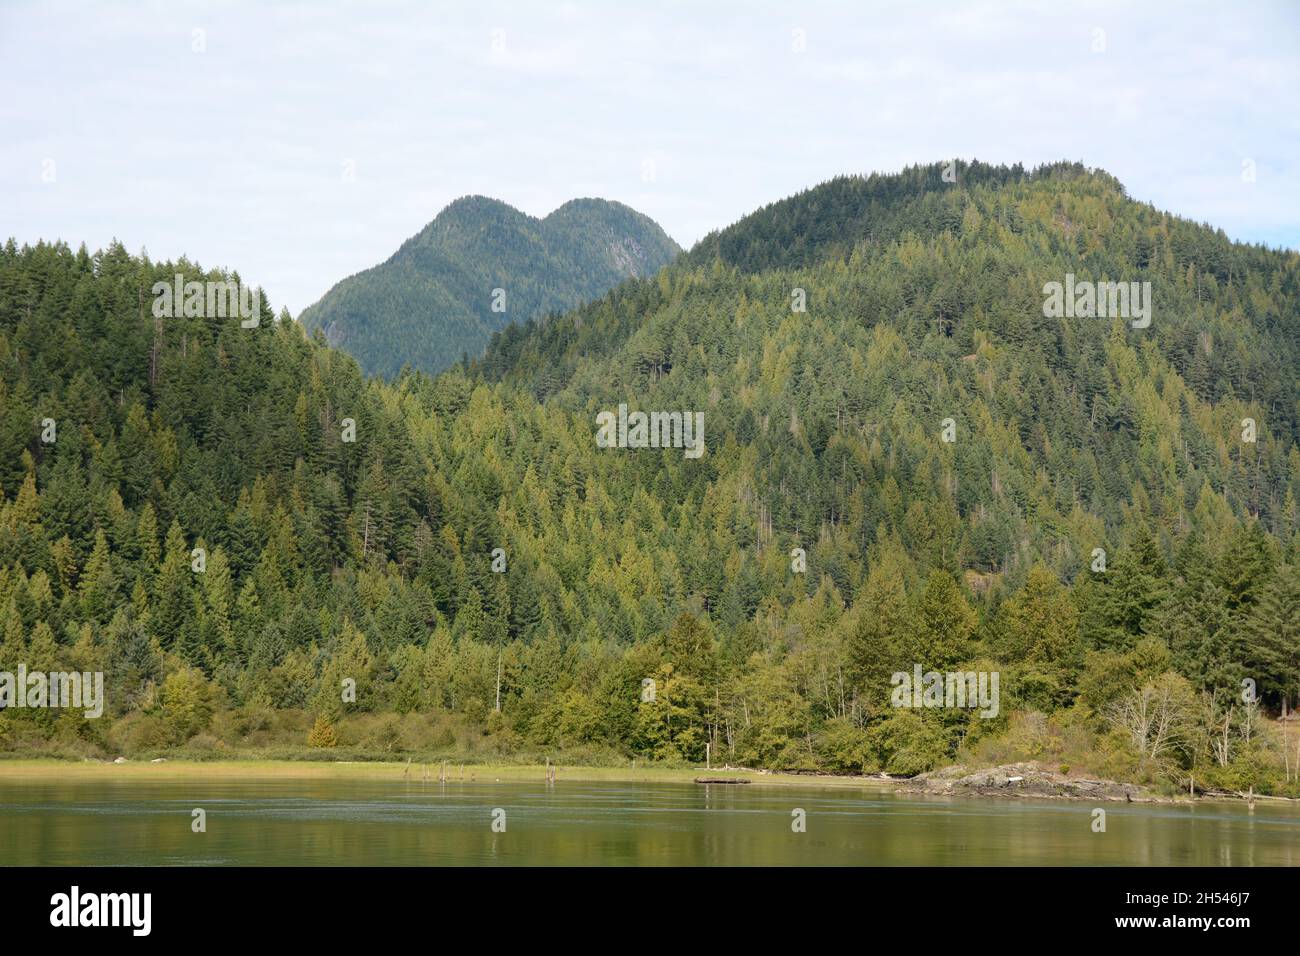 Die Küstenberge und der Wald entlang des Pitt River und des Widgeon Marsh Regional Park, in der Nähe von Pitt Meadows, British Columbia, Kanada. Stockfoto